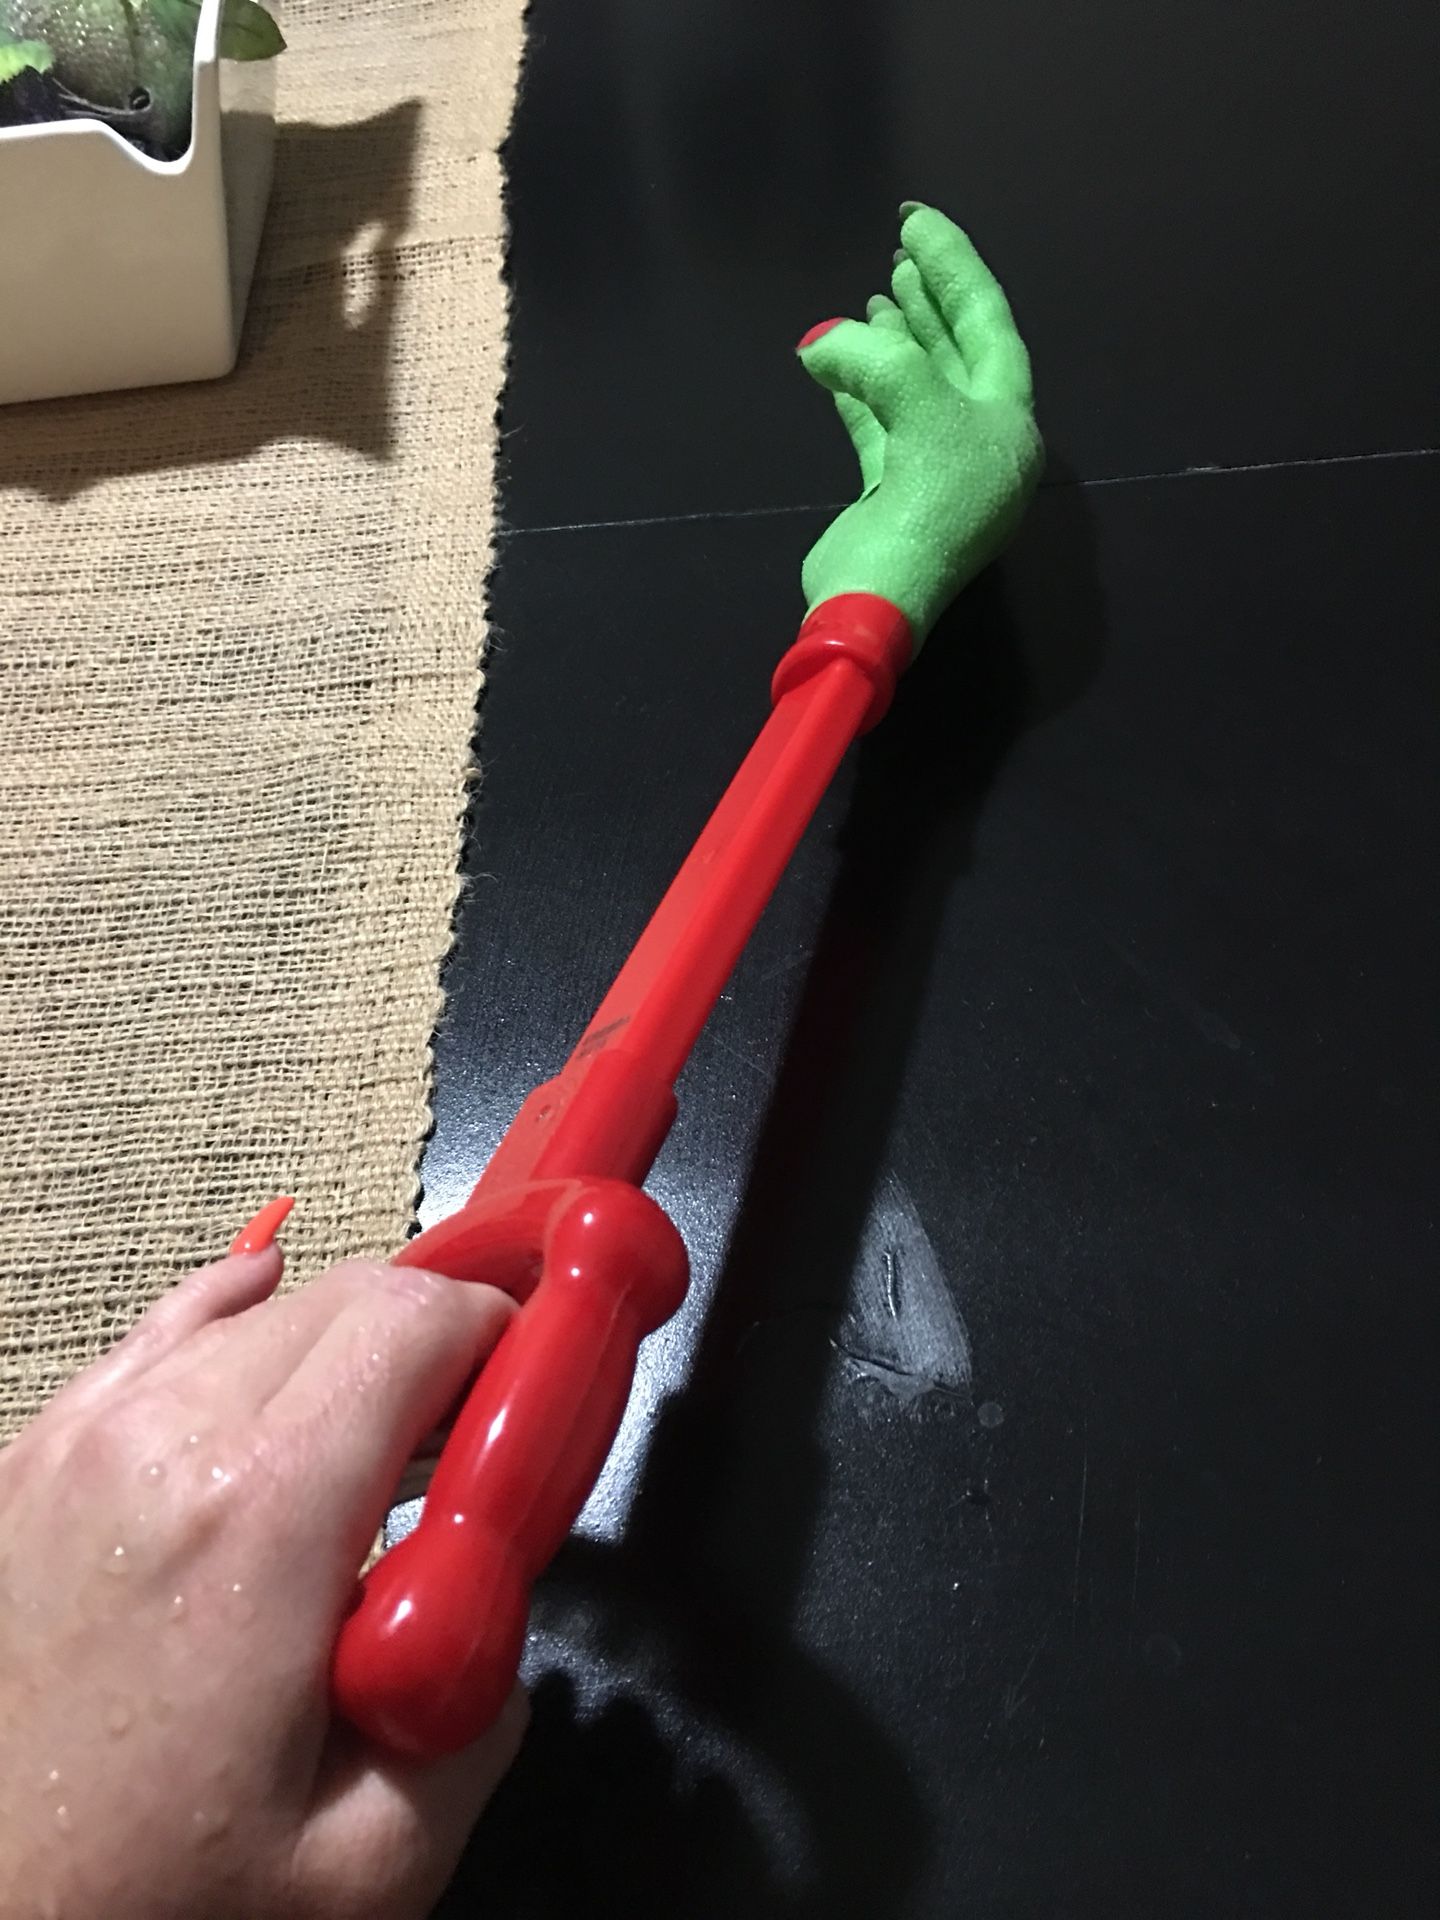 Skid toy witch graber hand